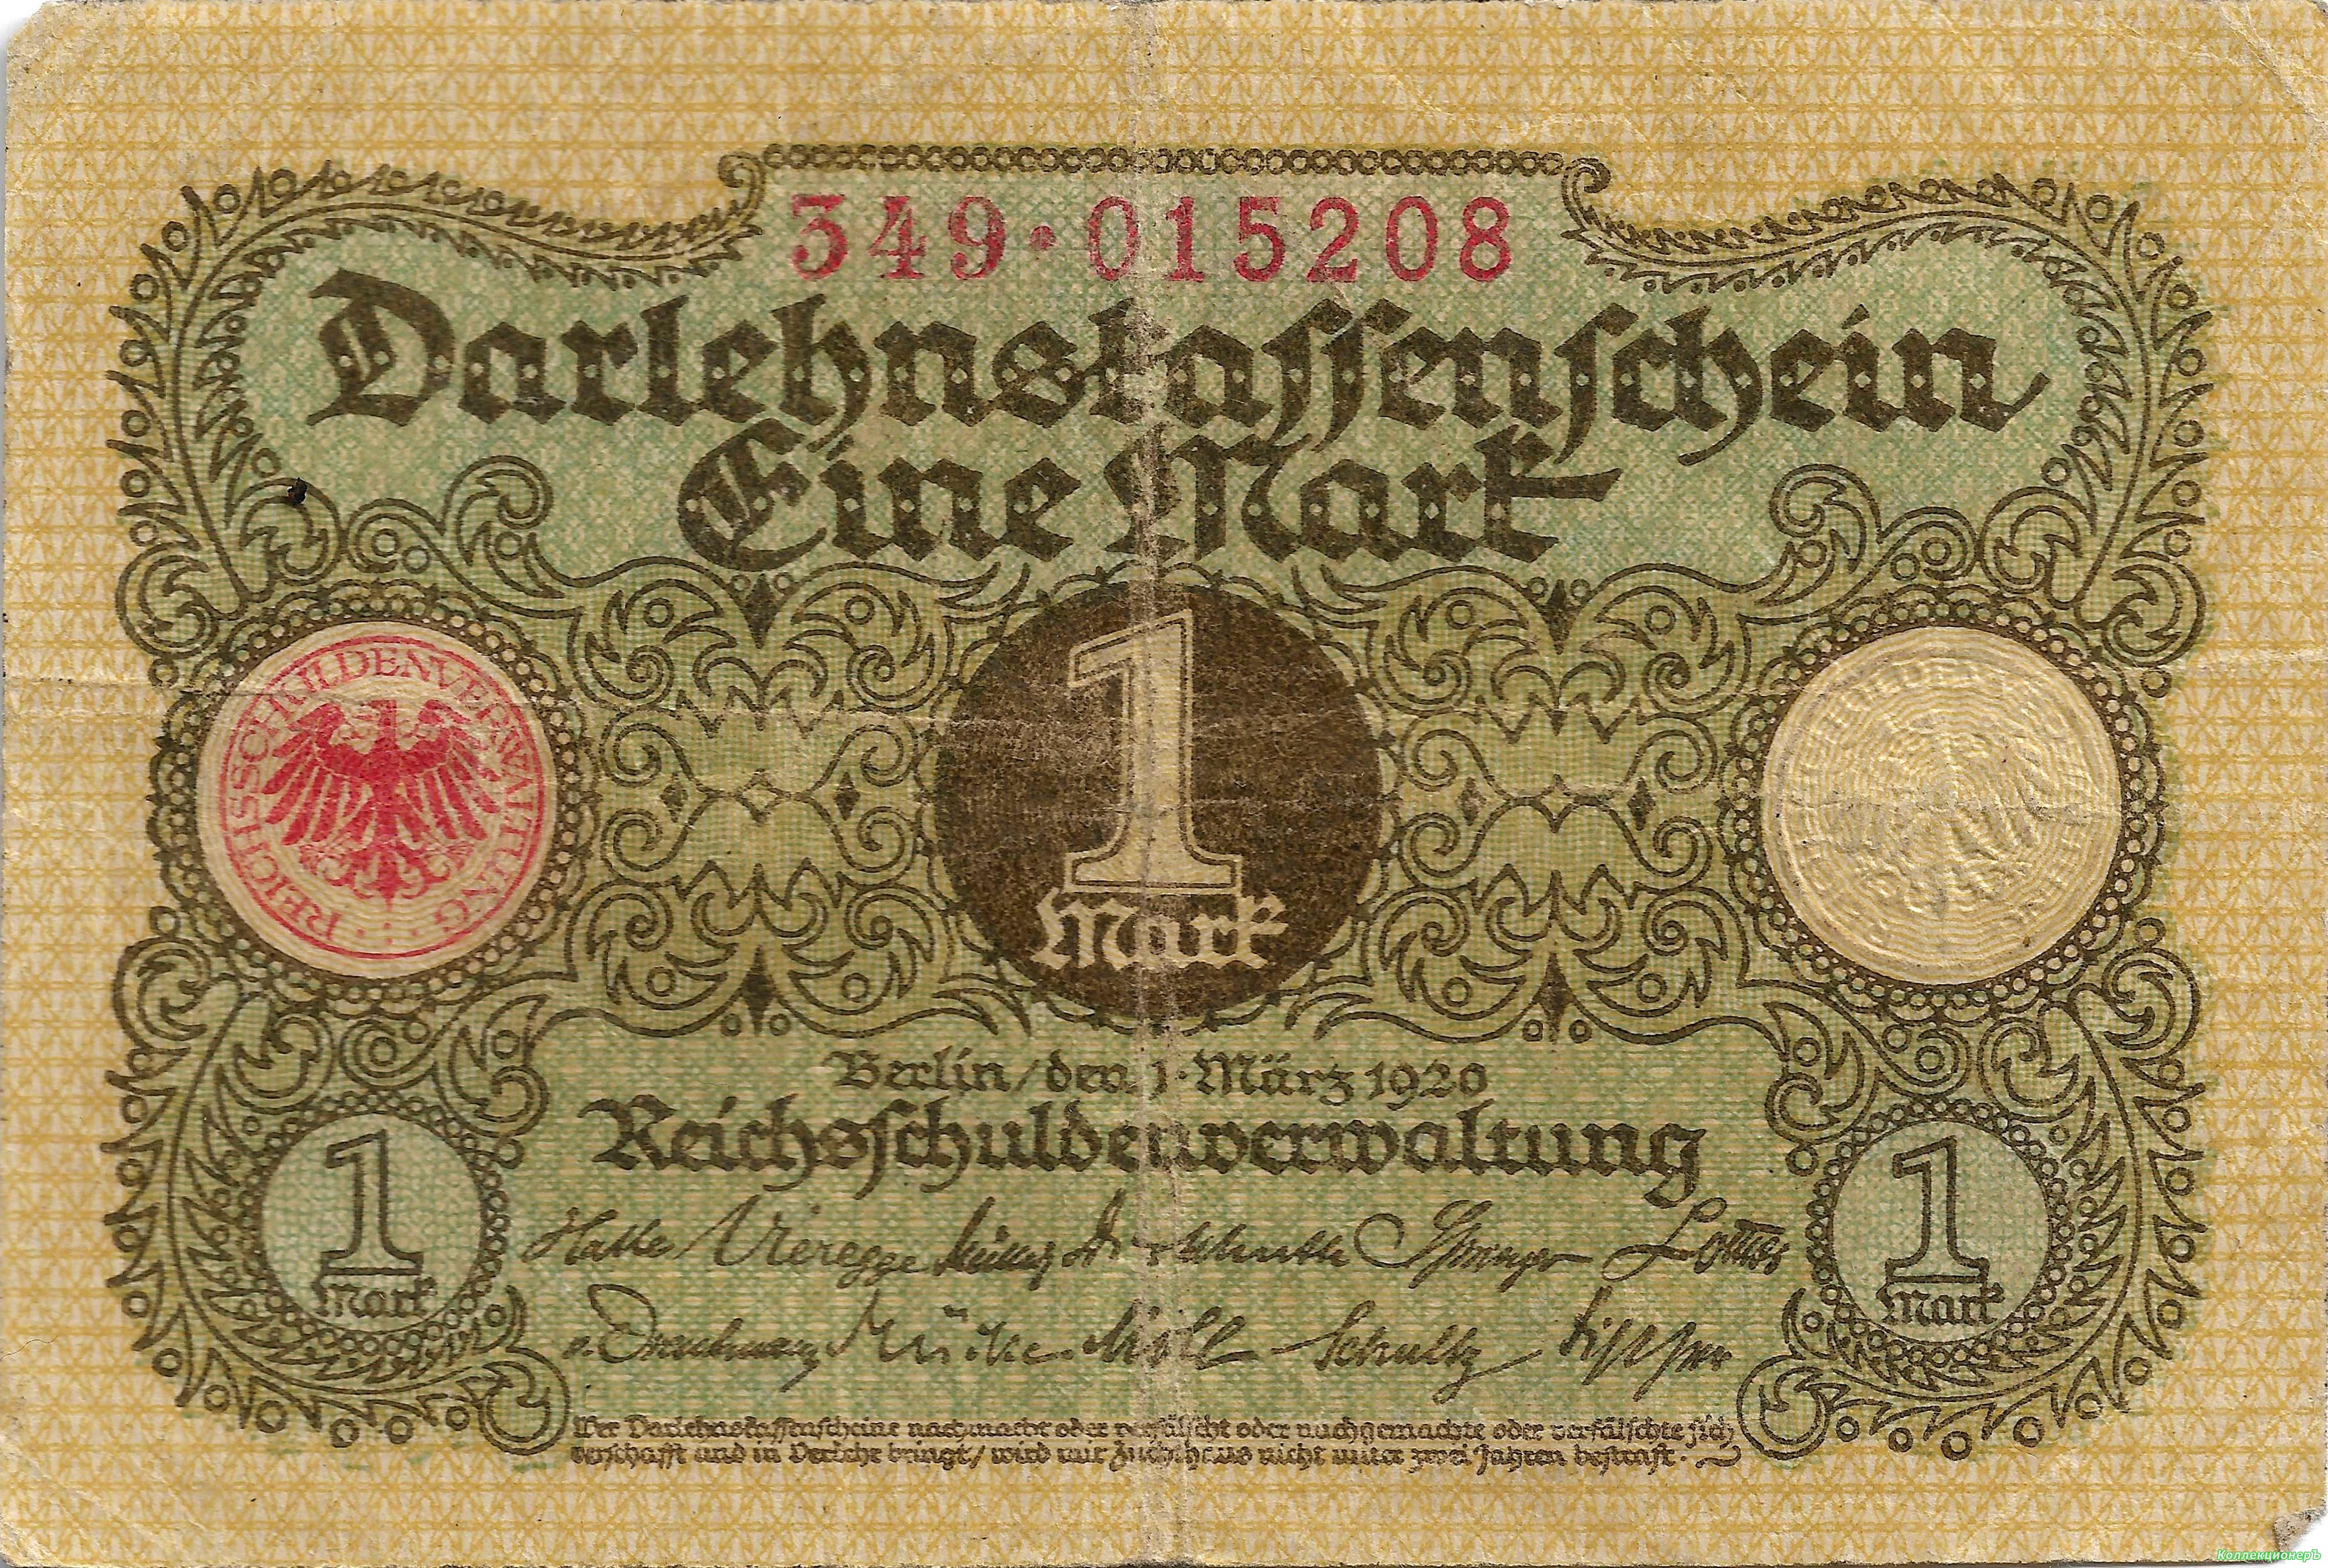 1 mark each. 1 Марка Германия 1920. Денежные знаки Германии 1920. Марки 1920 года. Банкноты 1920 года.